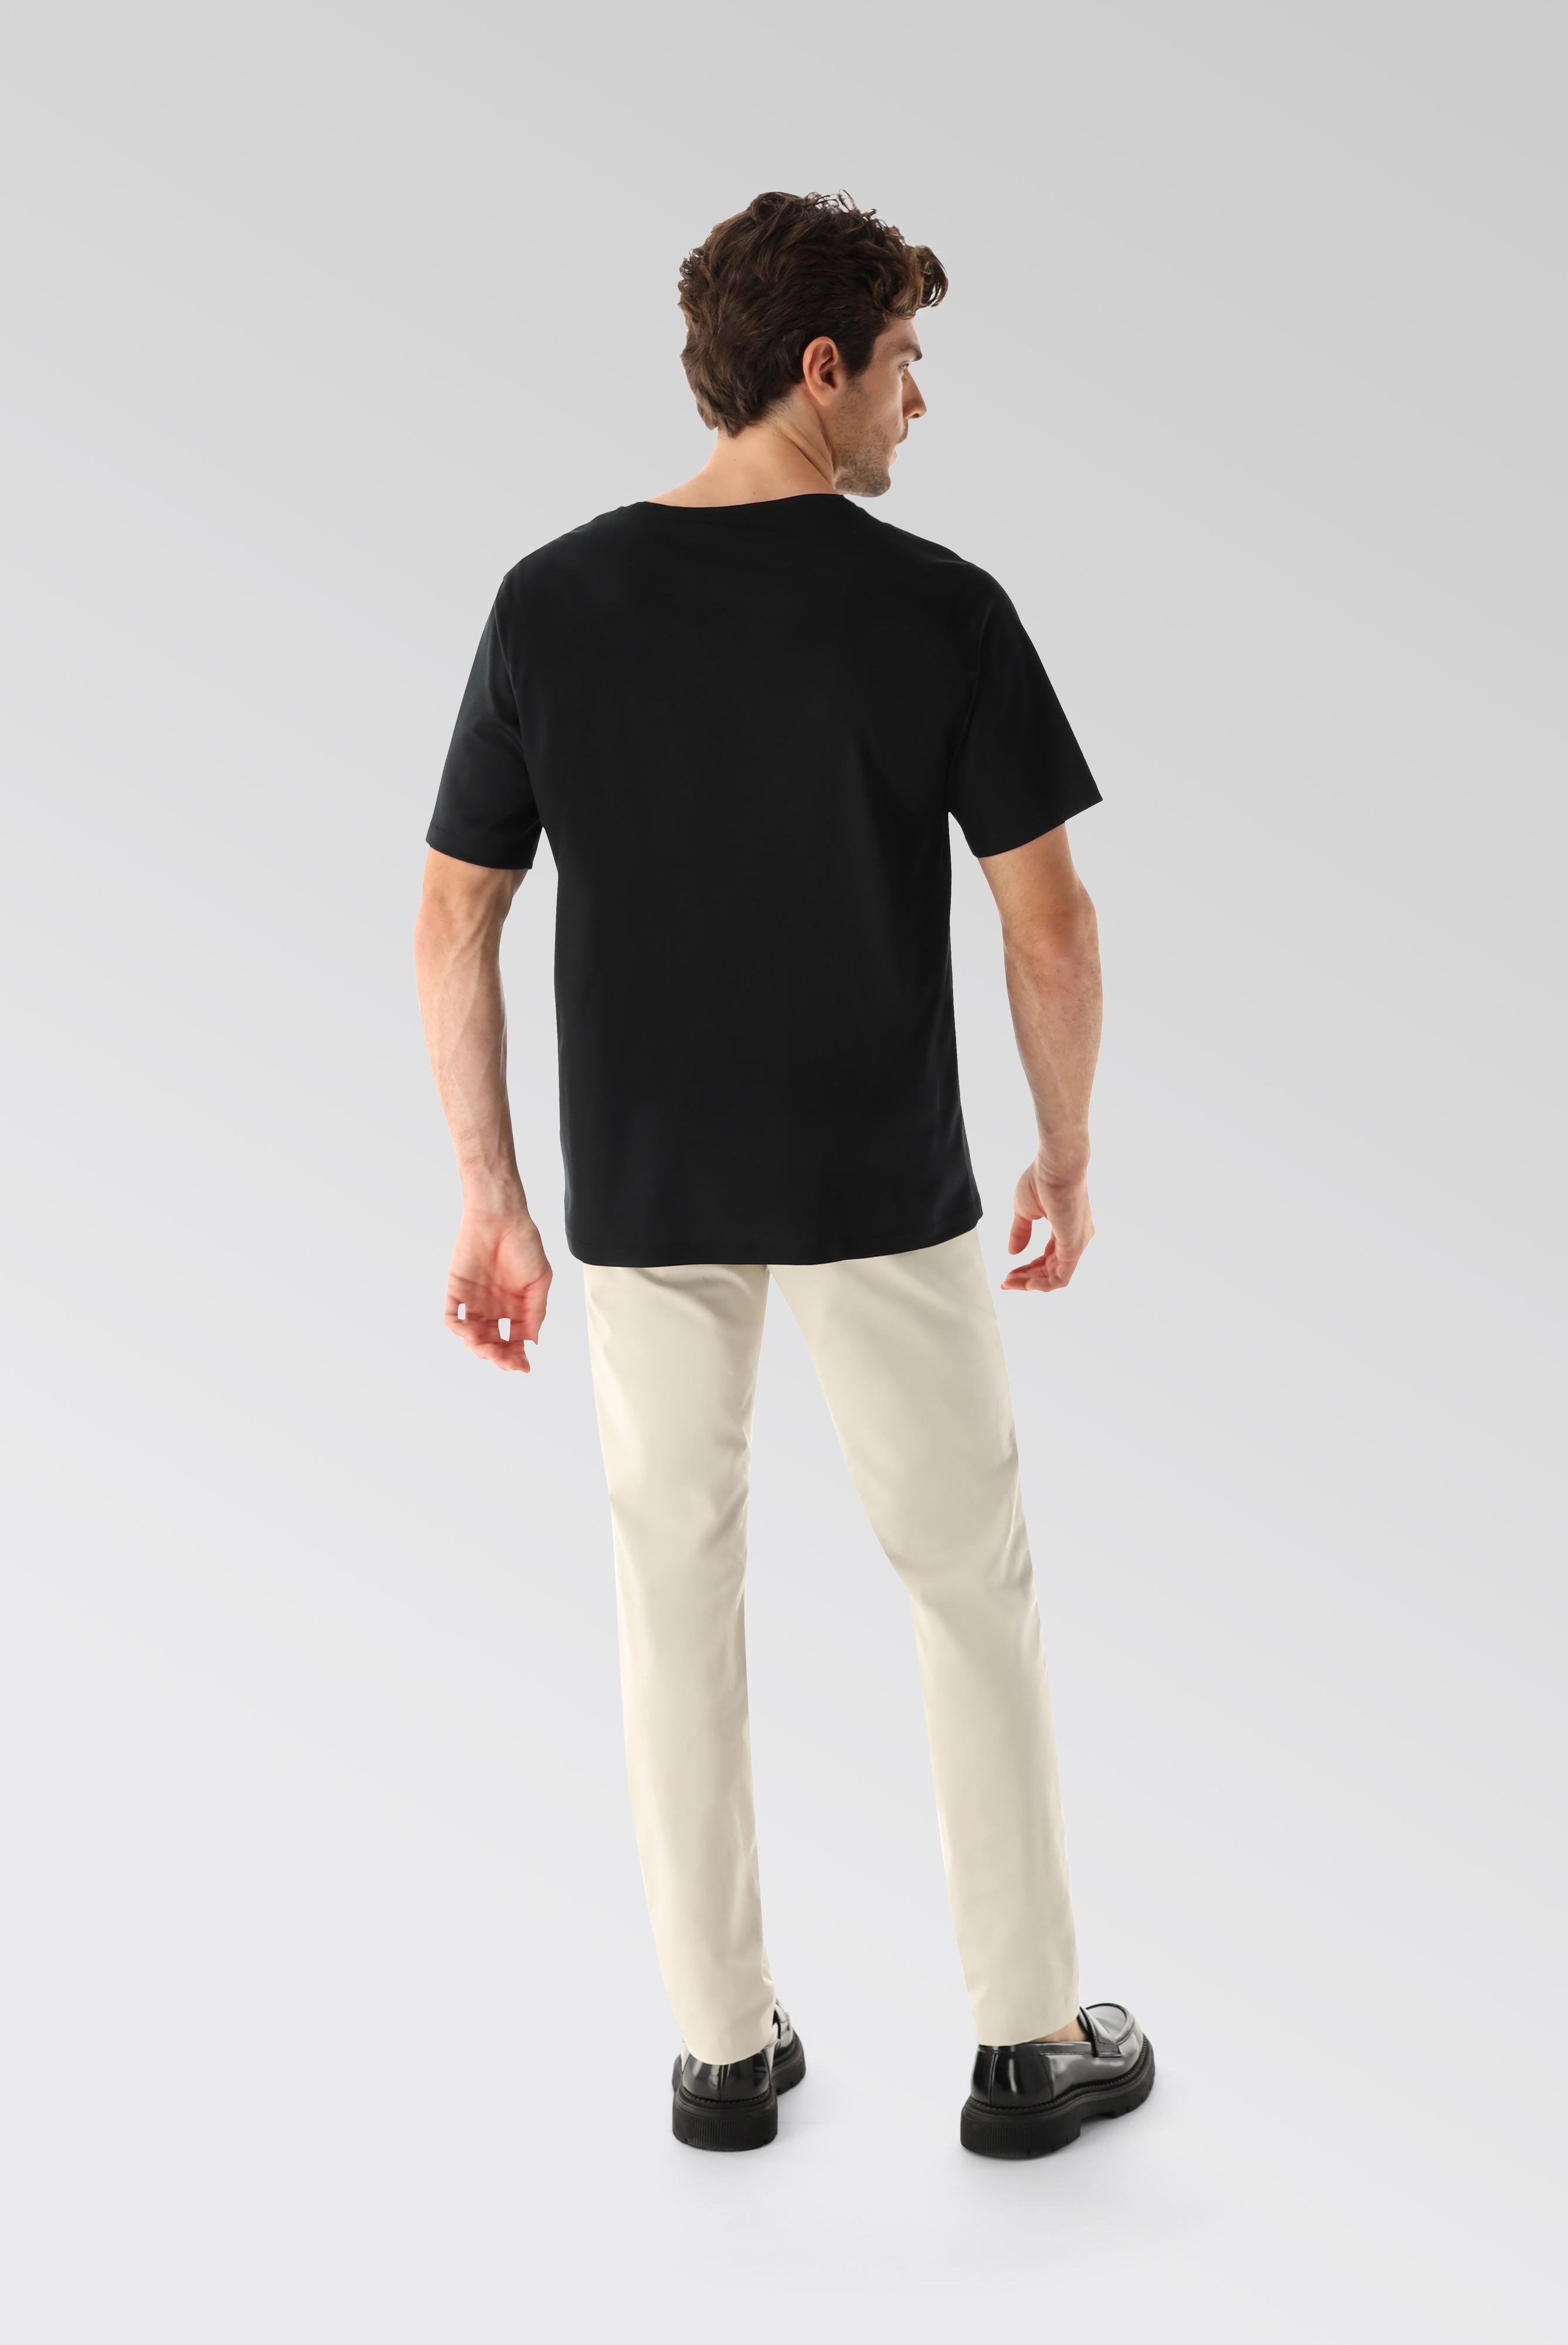 T-Shirts+Oversize Jersey T-Shirt mit Brusttasche+20.1776.GZ.180031.099.L